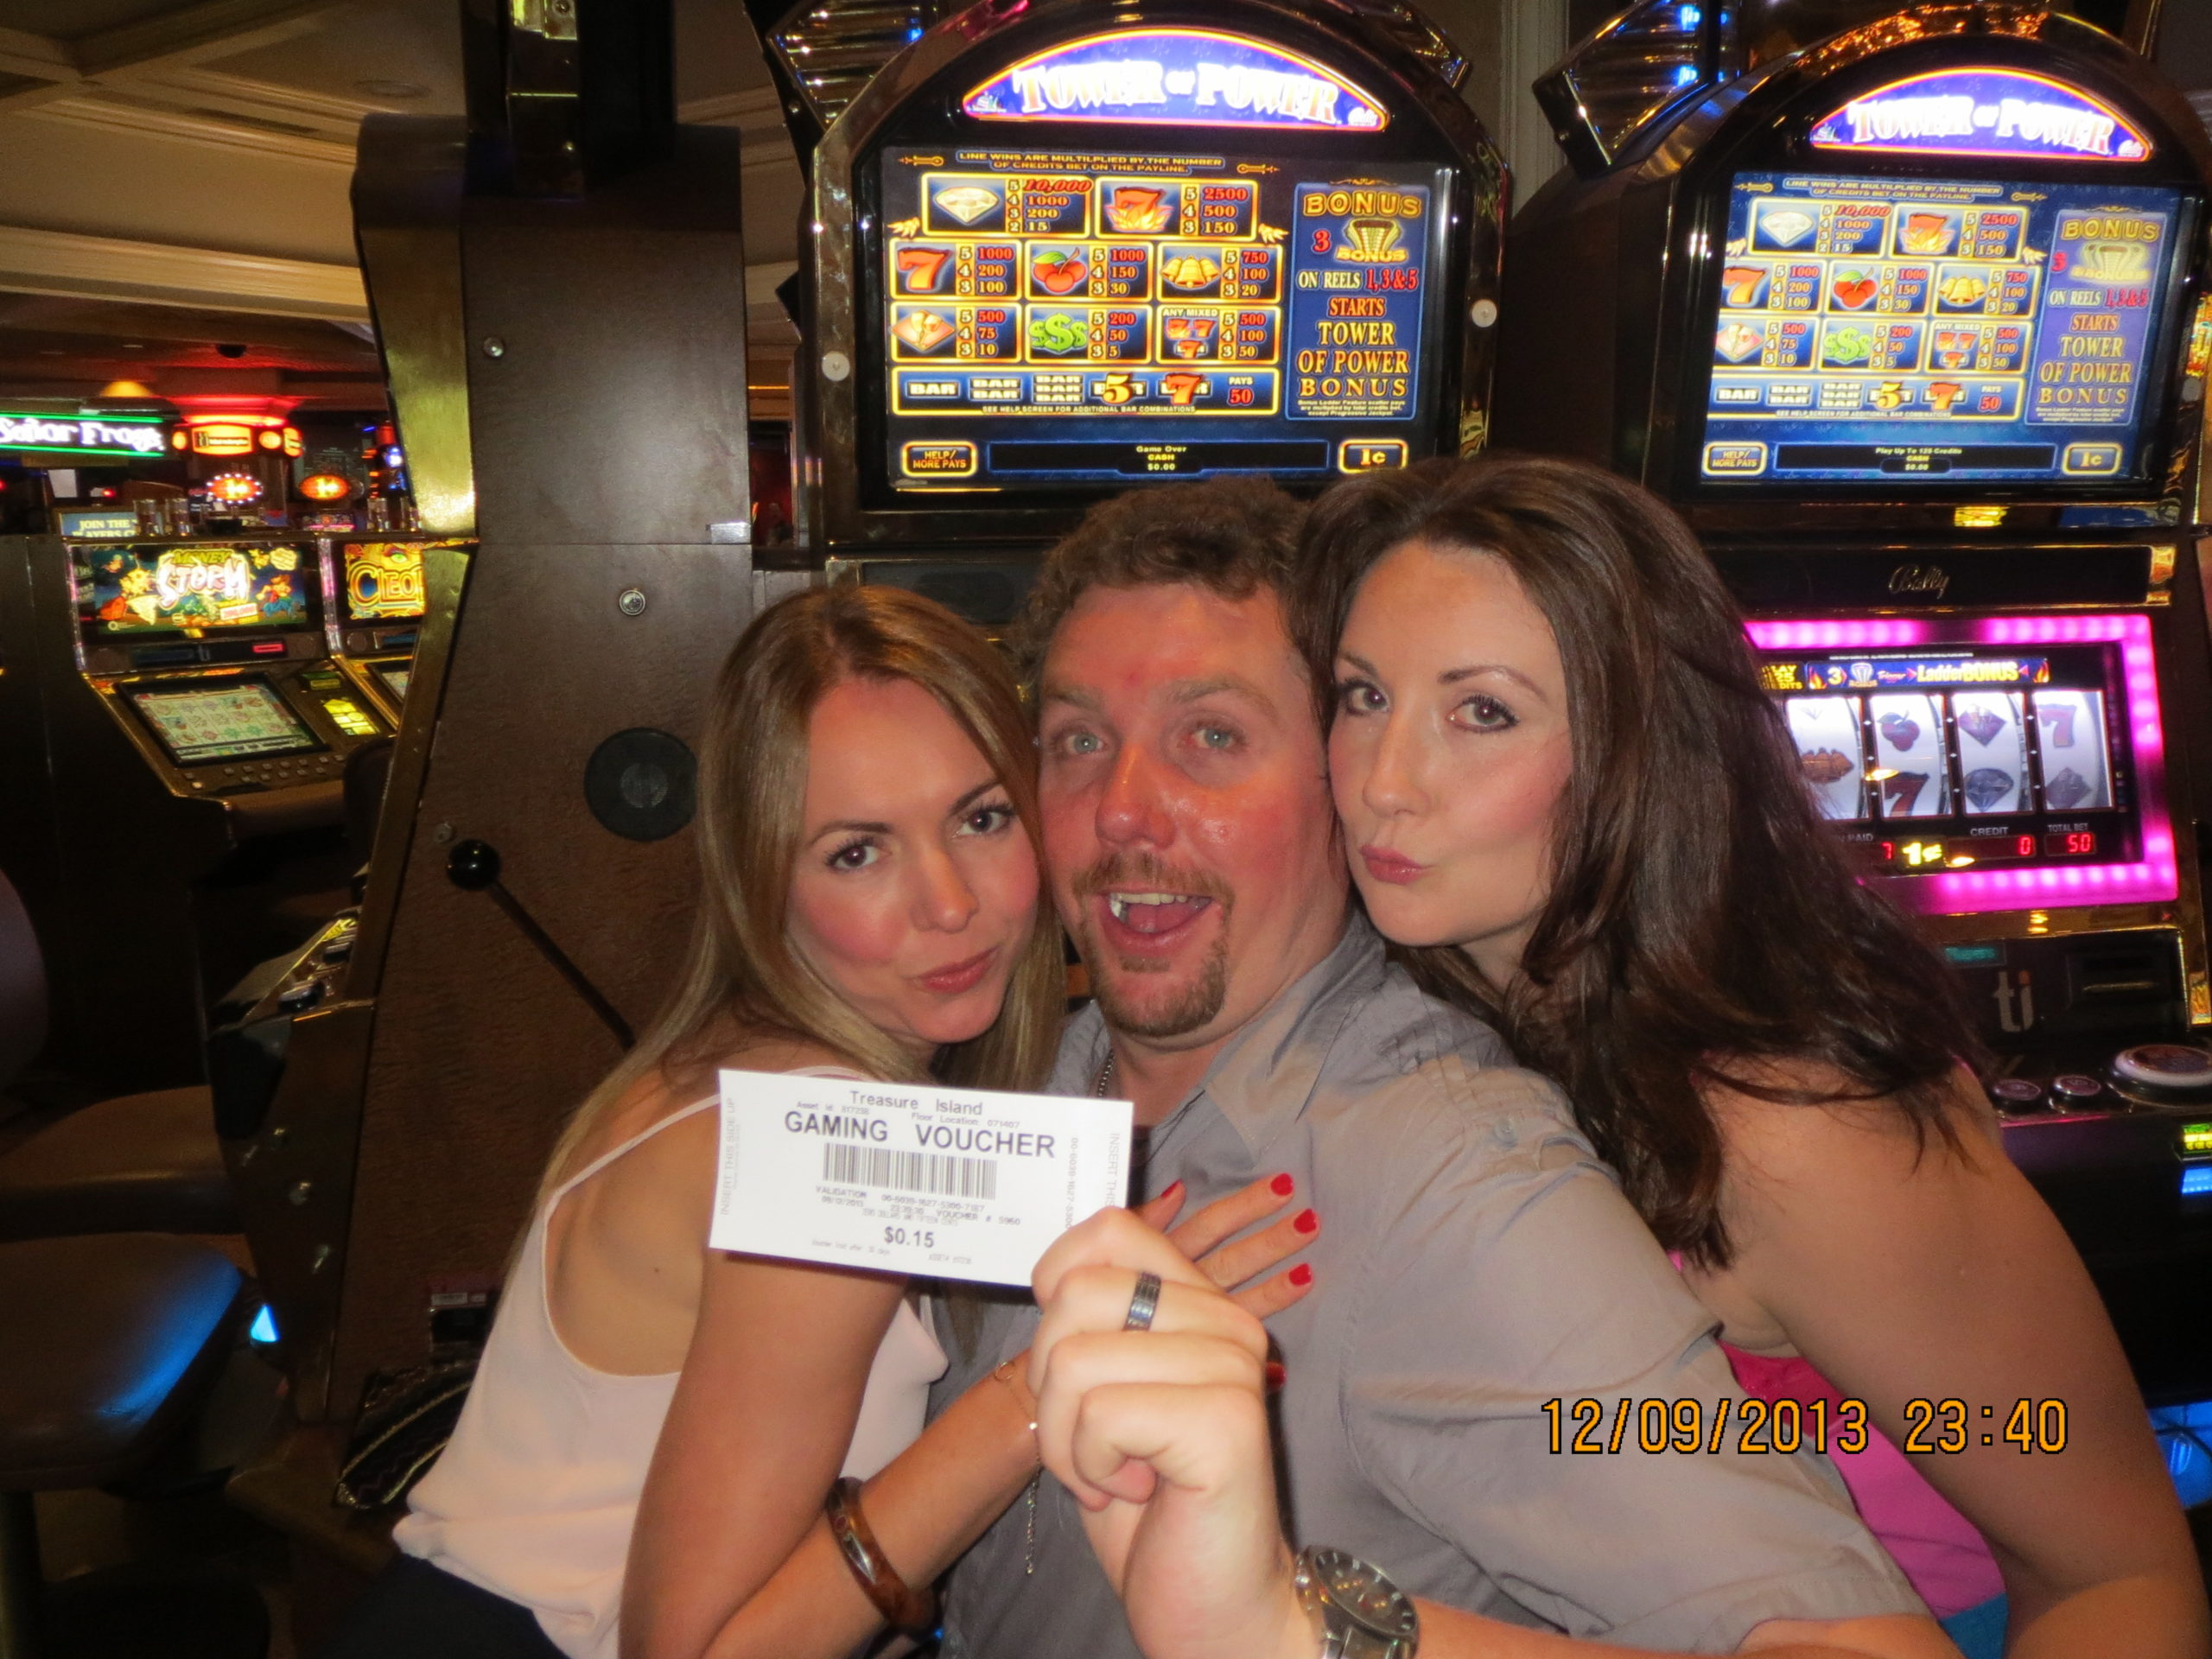 Winning big in Vegas!